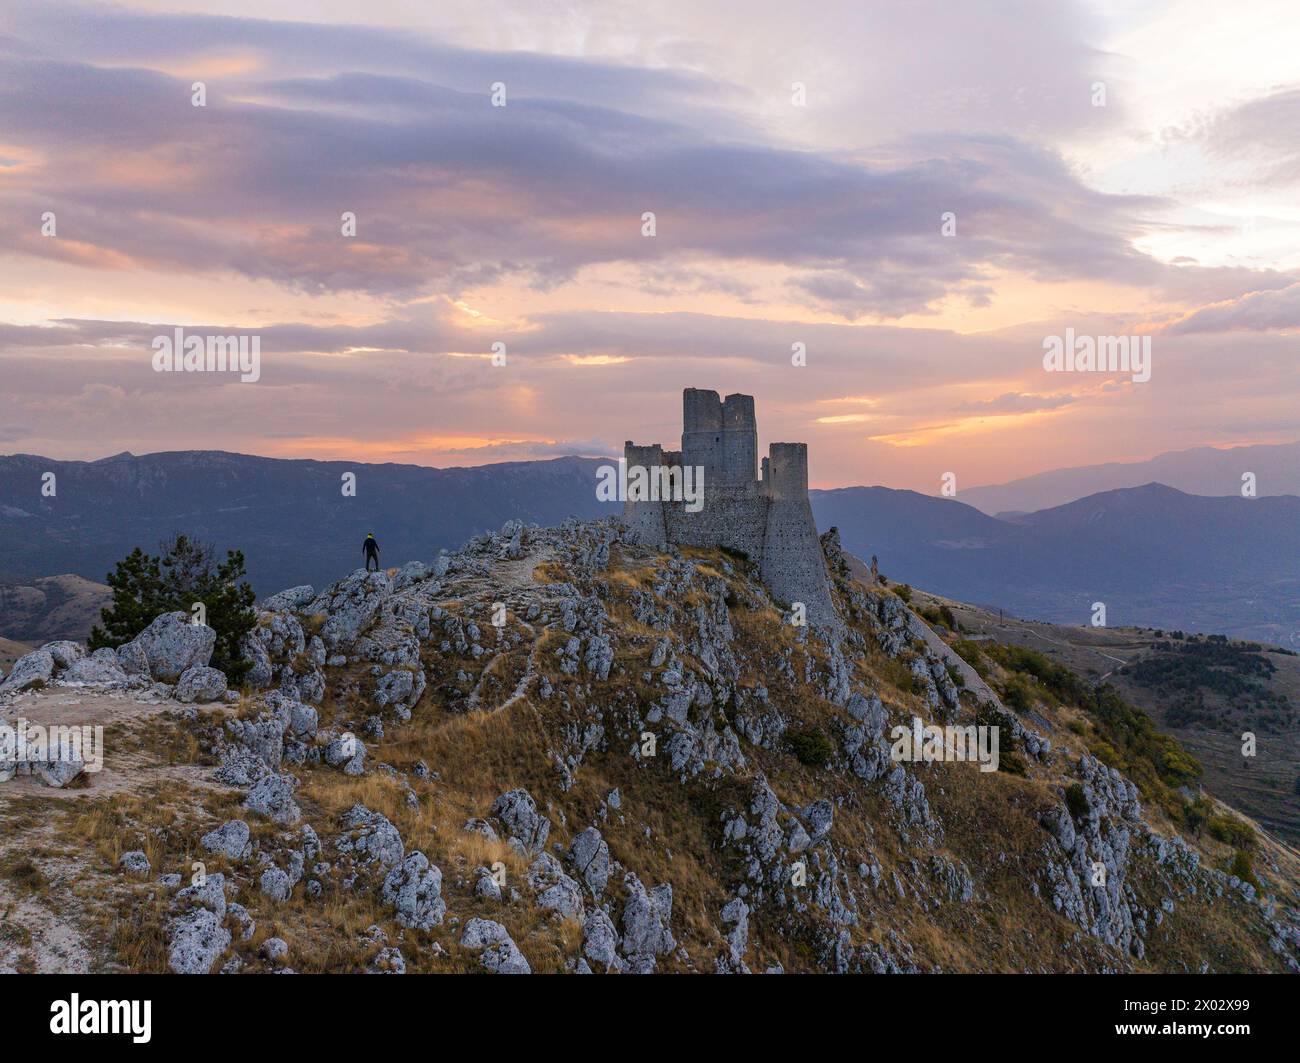 Una persona ammira il castello di Rocca Calascio durante l'alba autunnale, il Parco Nazionale del Gran Sasso e Monti di Laga, Abruzzo, Italia, Europa Foto Stock